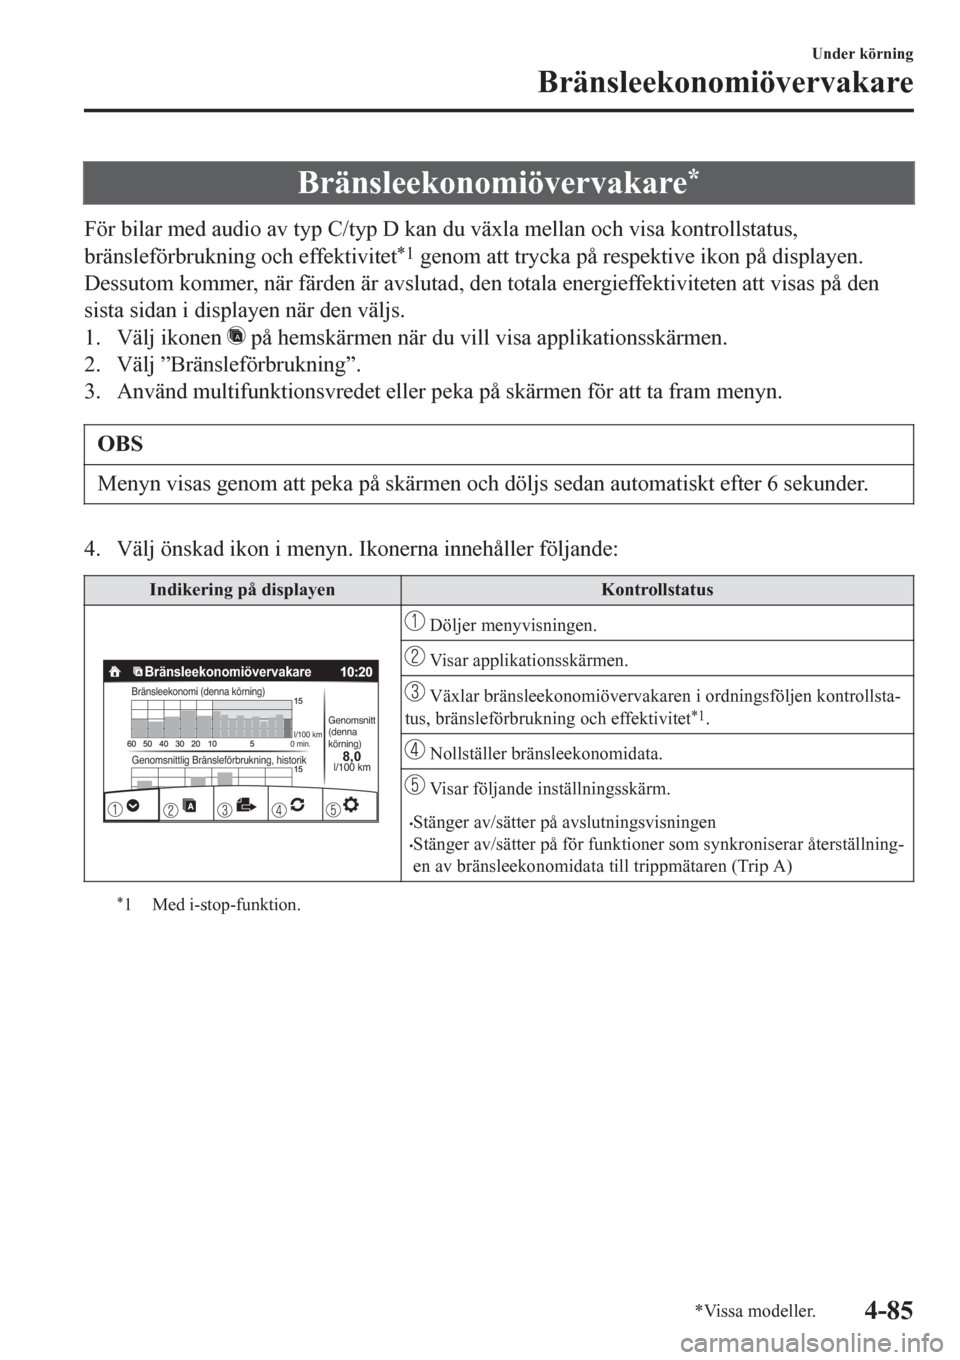 MAZDA MODEL CX-3 2016  Ägarmanual (in Swedish) Bränsleekonomiövervakare*
För bilar med audio av typ C/typ D kan du växla mellan och visa kontrollstatus,
bränsleförbrukning och effektivitet
*1 genom att trycka på respektive ikon på displaye